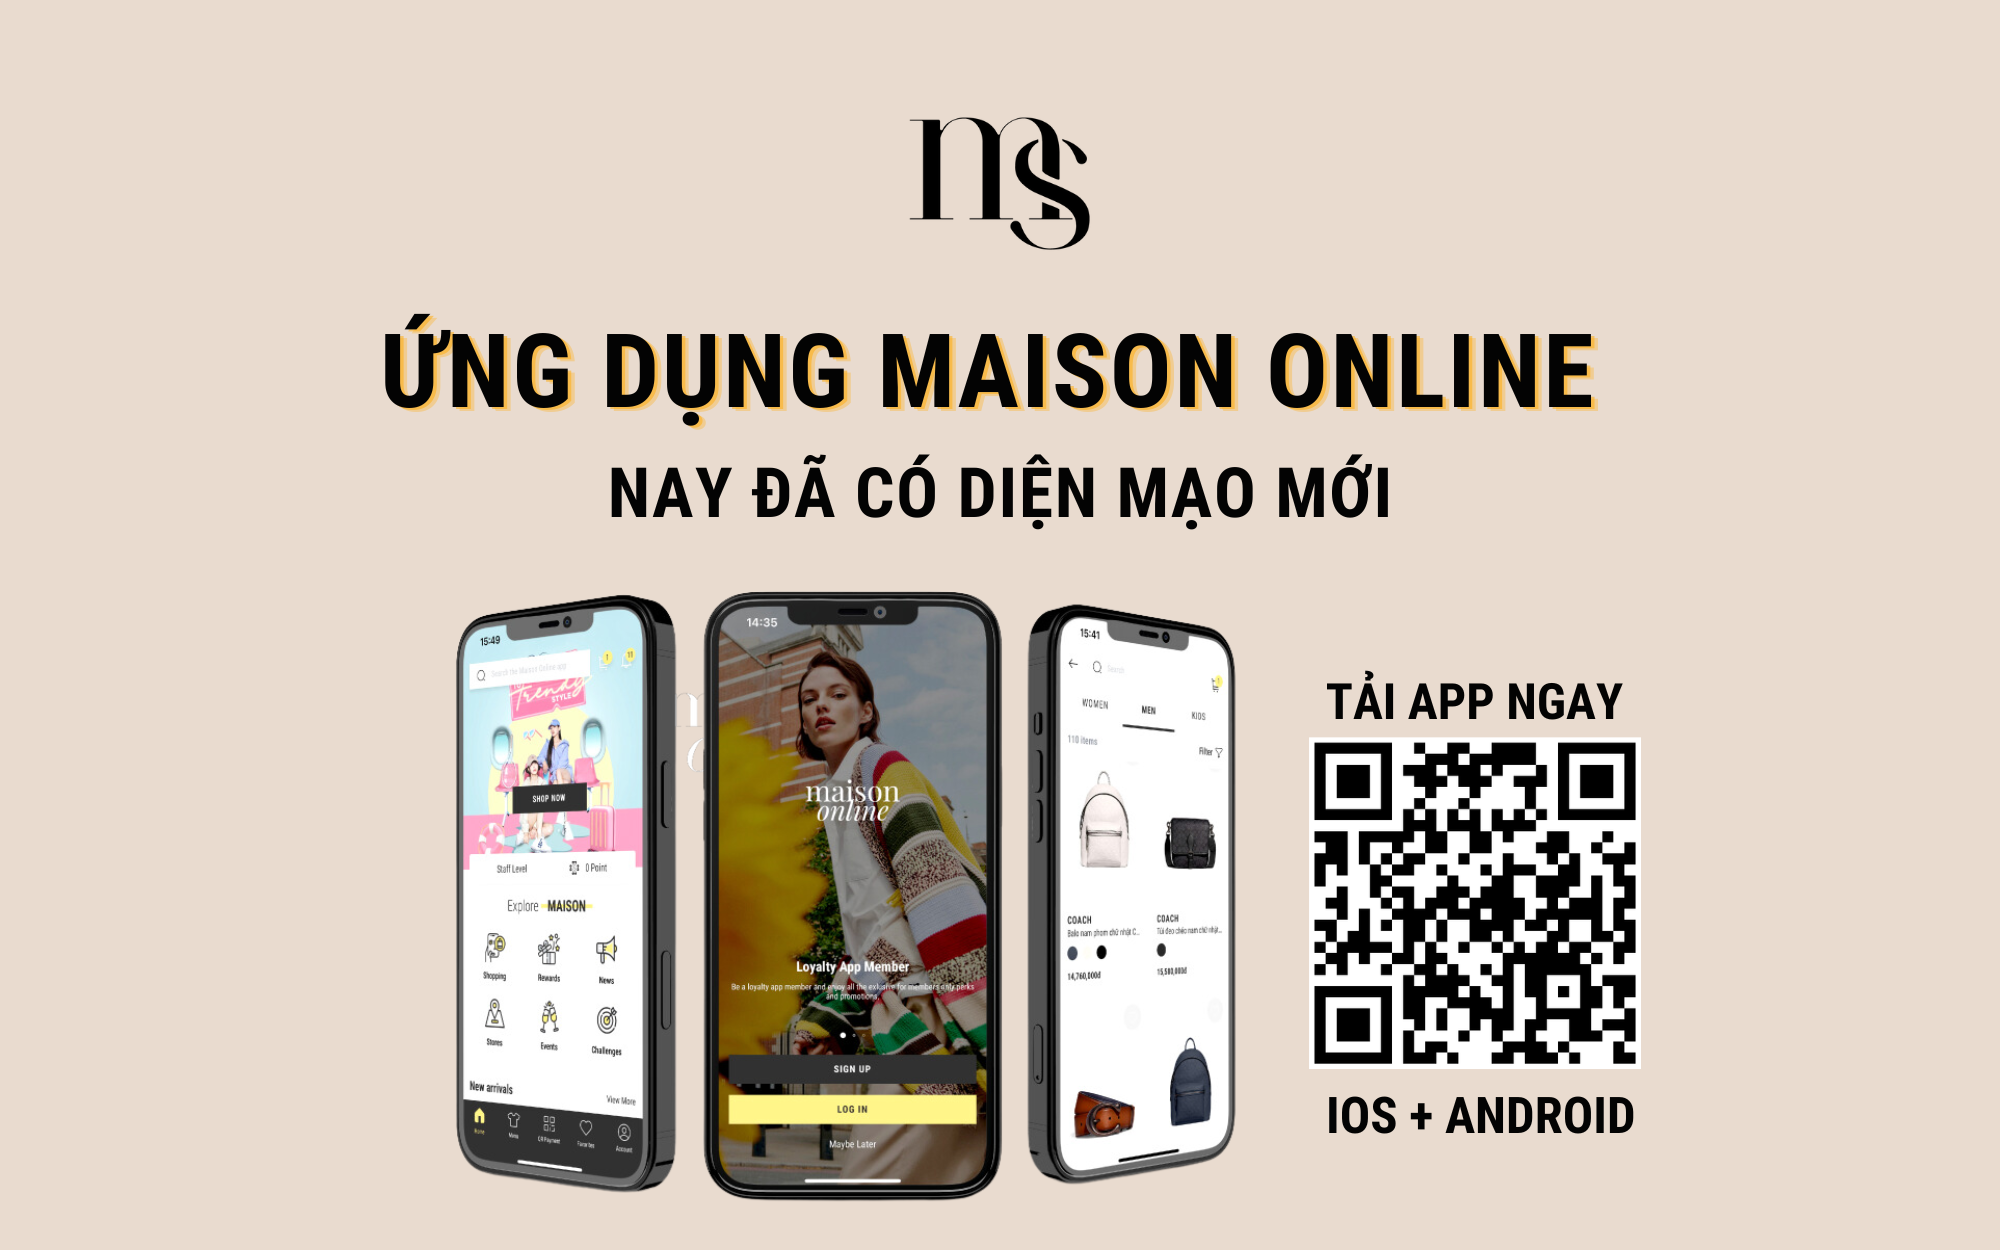 Maison Online App có gì thú vị khiến Duy Khánh, Call Me Duy và dàn trai xinh gái đẹp chao đảo? - Ảnh 1.